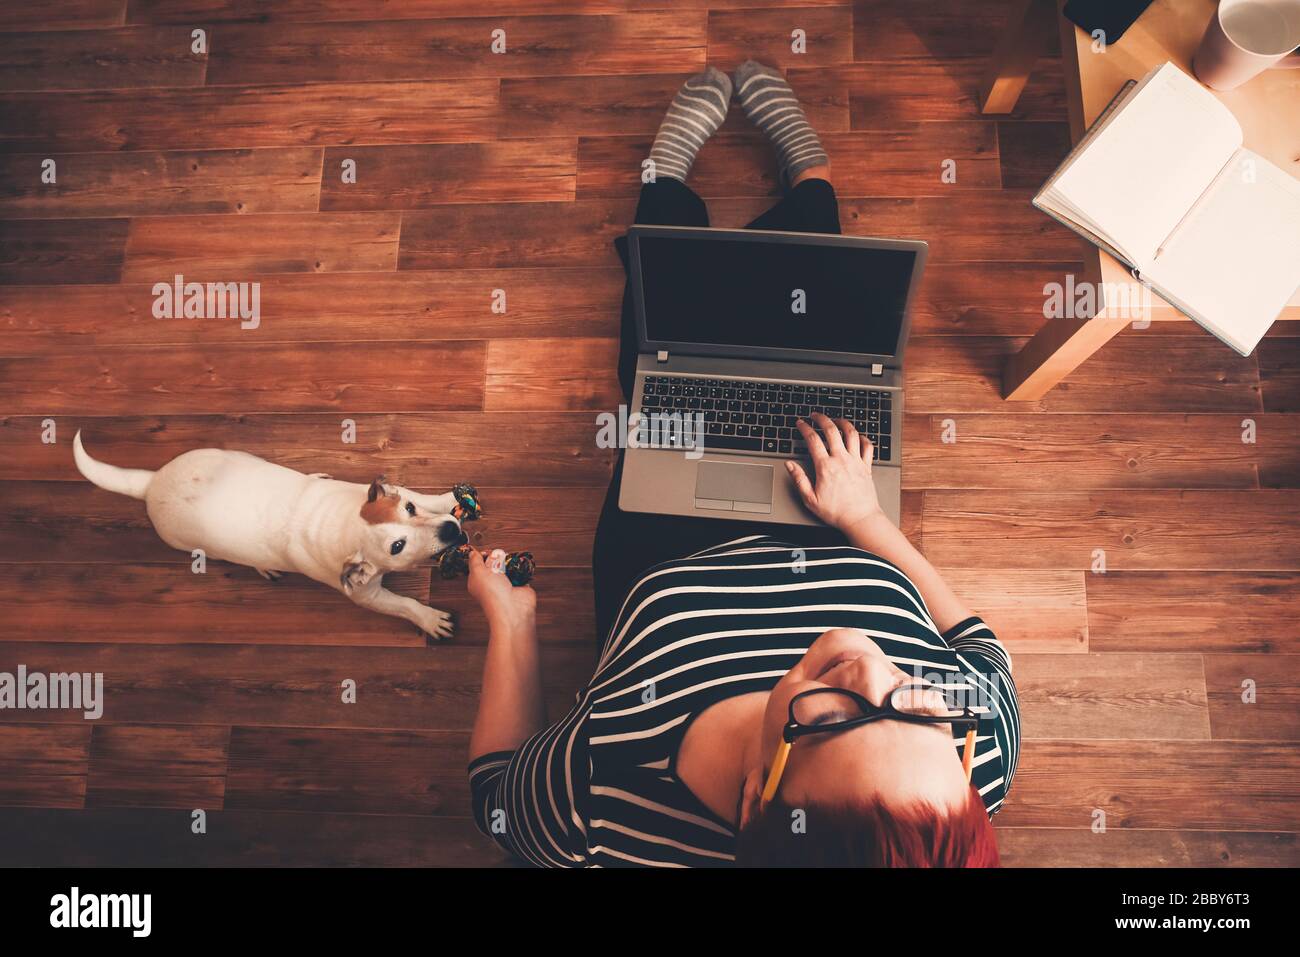 Oficina en casa, una mujer trabaja en línea utilizando la computadora portátil, el perro interfiere. Permanezca en casa, trabaje en línea, ponga en cuarentena el coronavirus Foto de stock